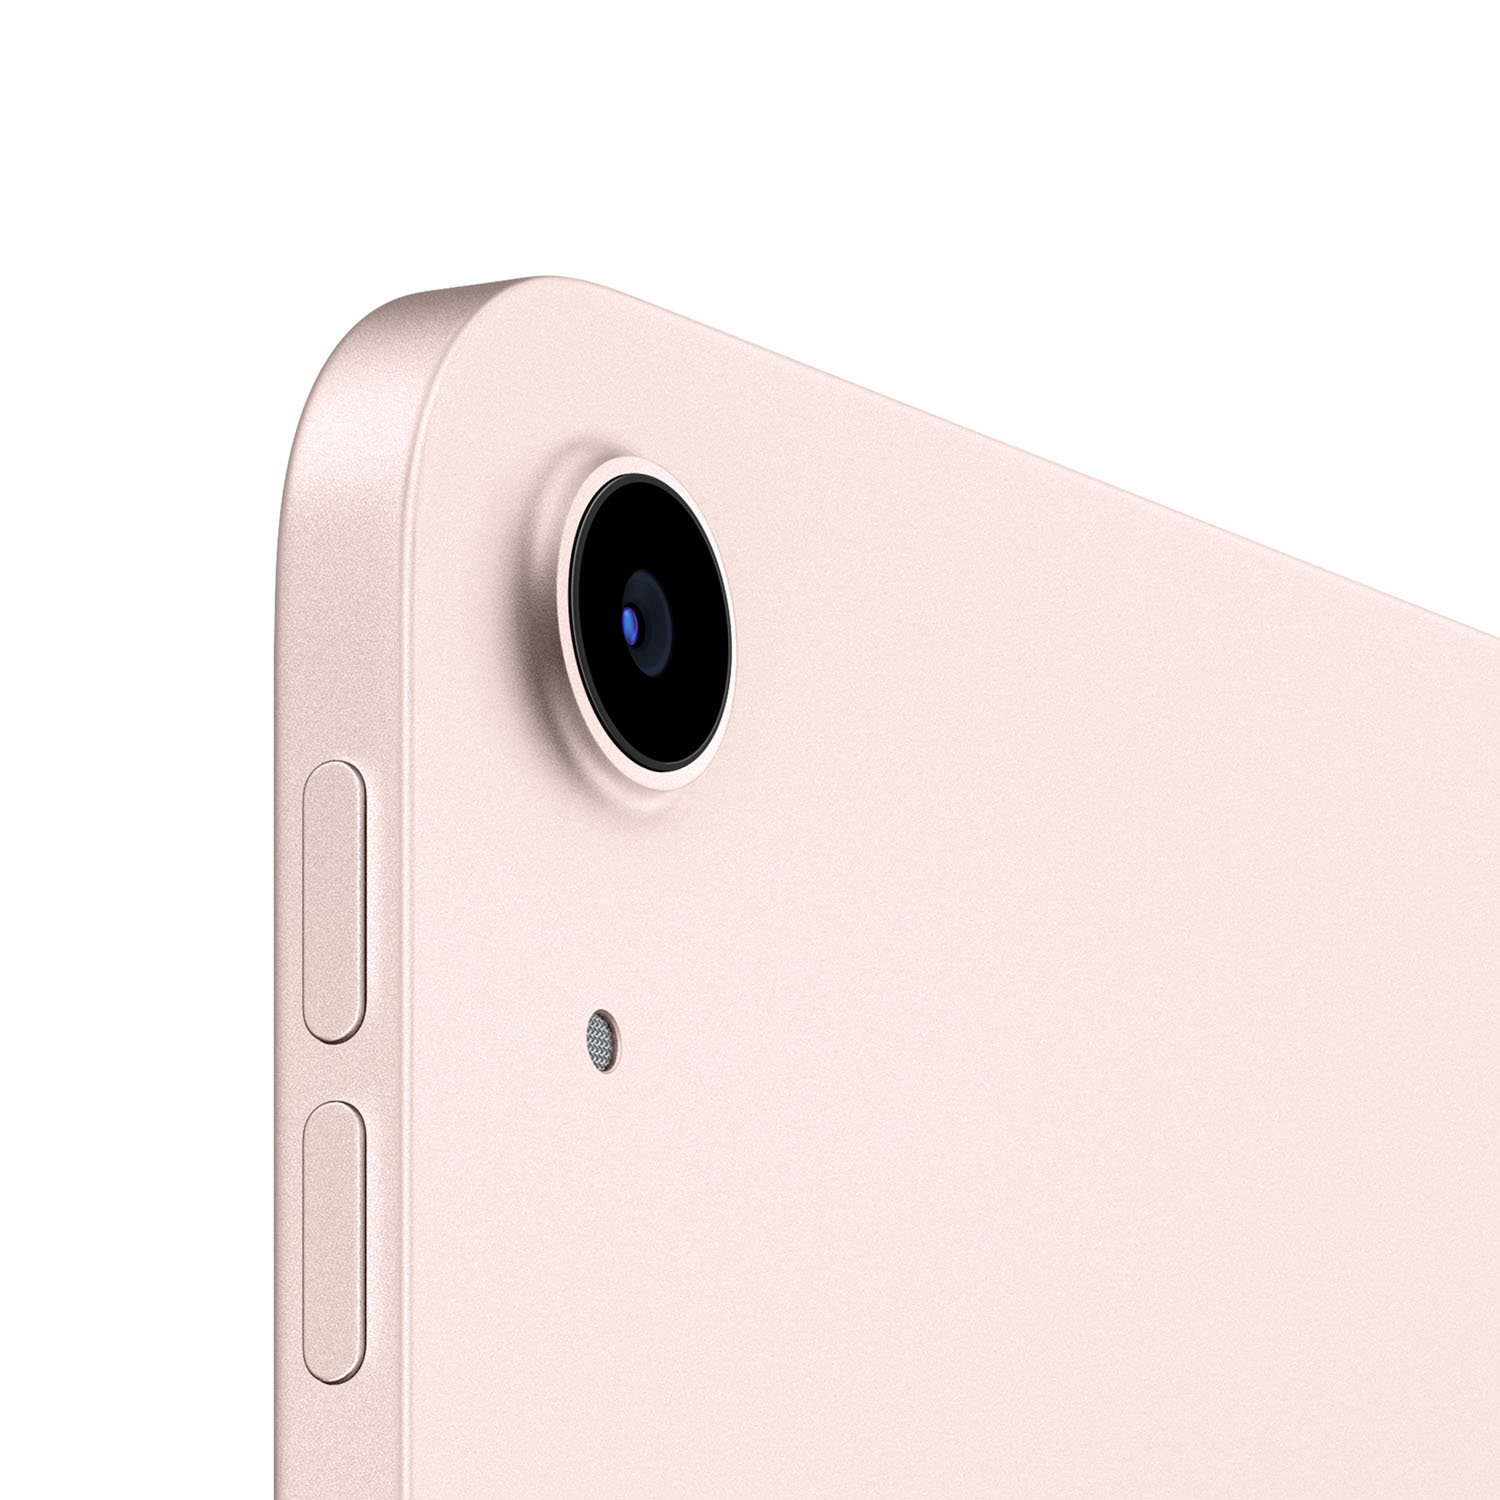 Apple iPad Air 10.9 Wi-Fi 64GB Pink 5.Gen // NEU